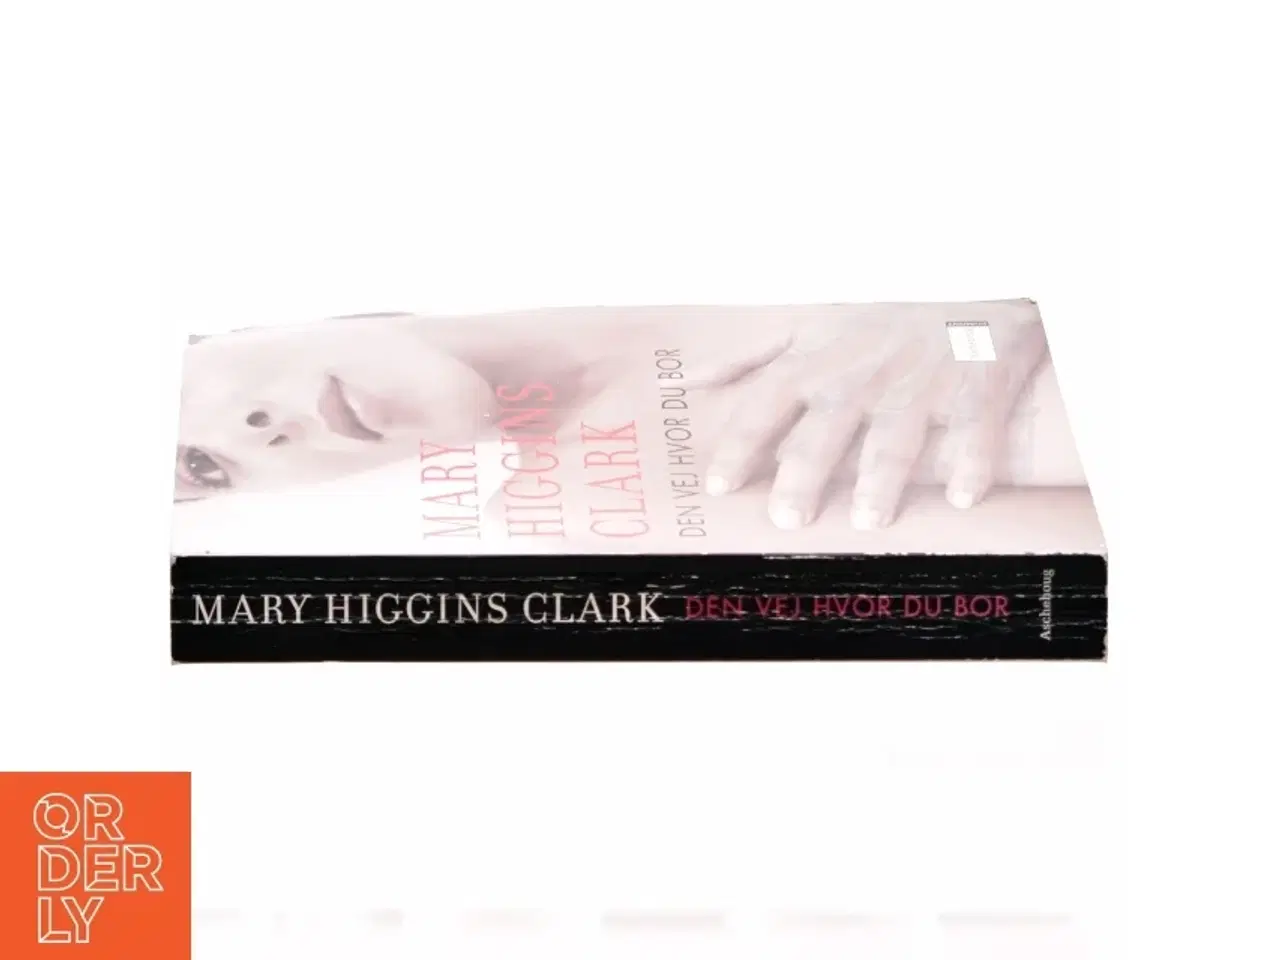 Billede 2 - Den vej hvor du bor af Mary Higgins Clark (Bog)